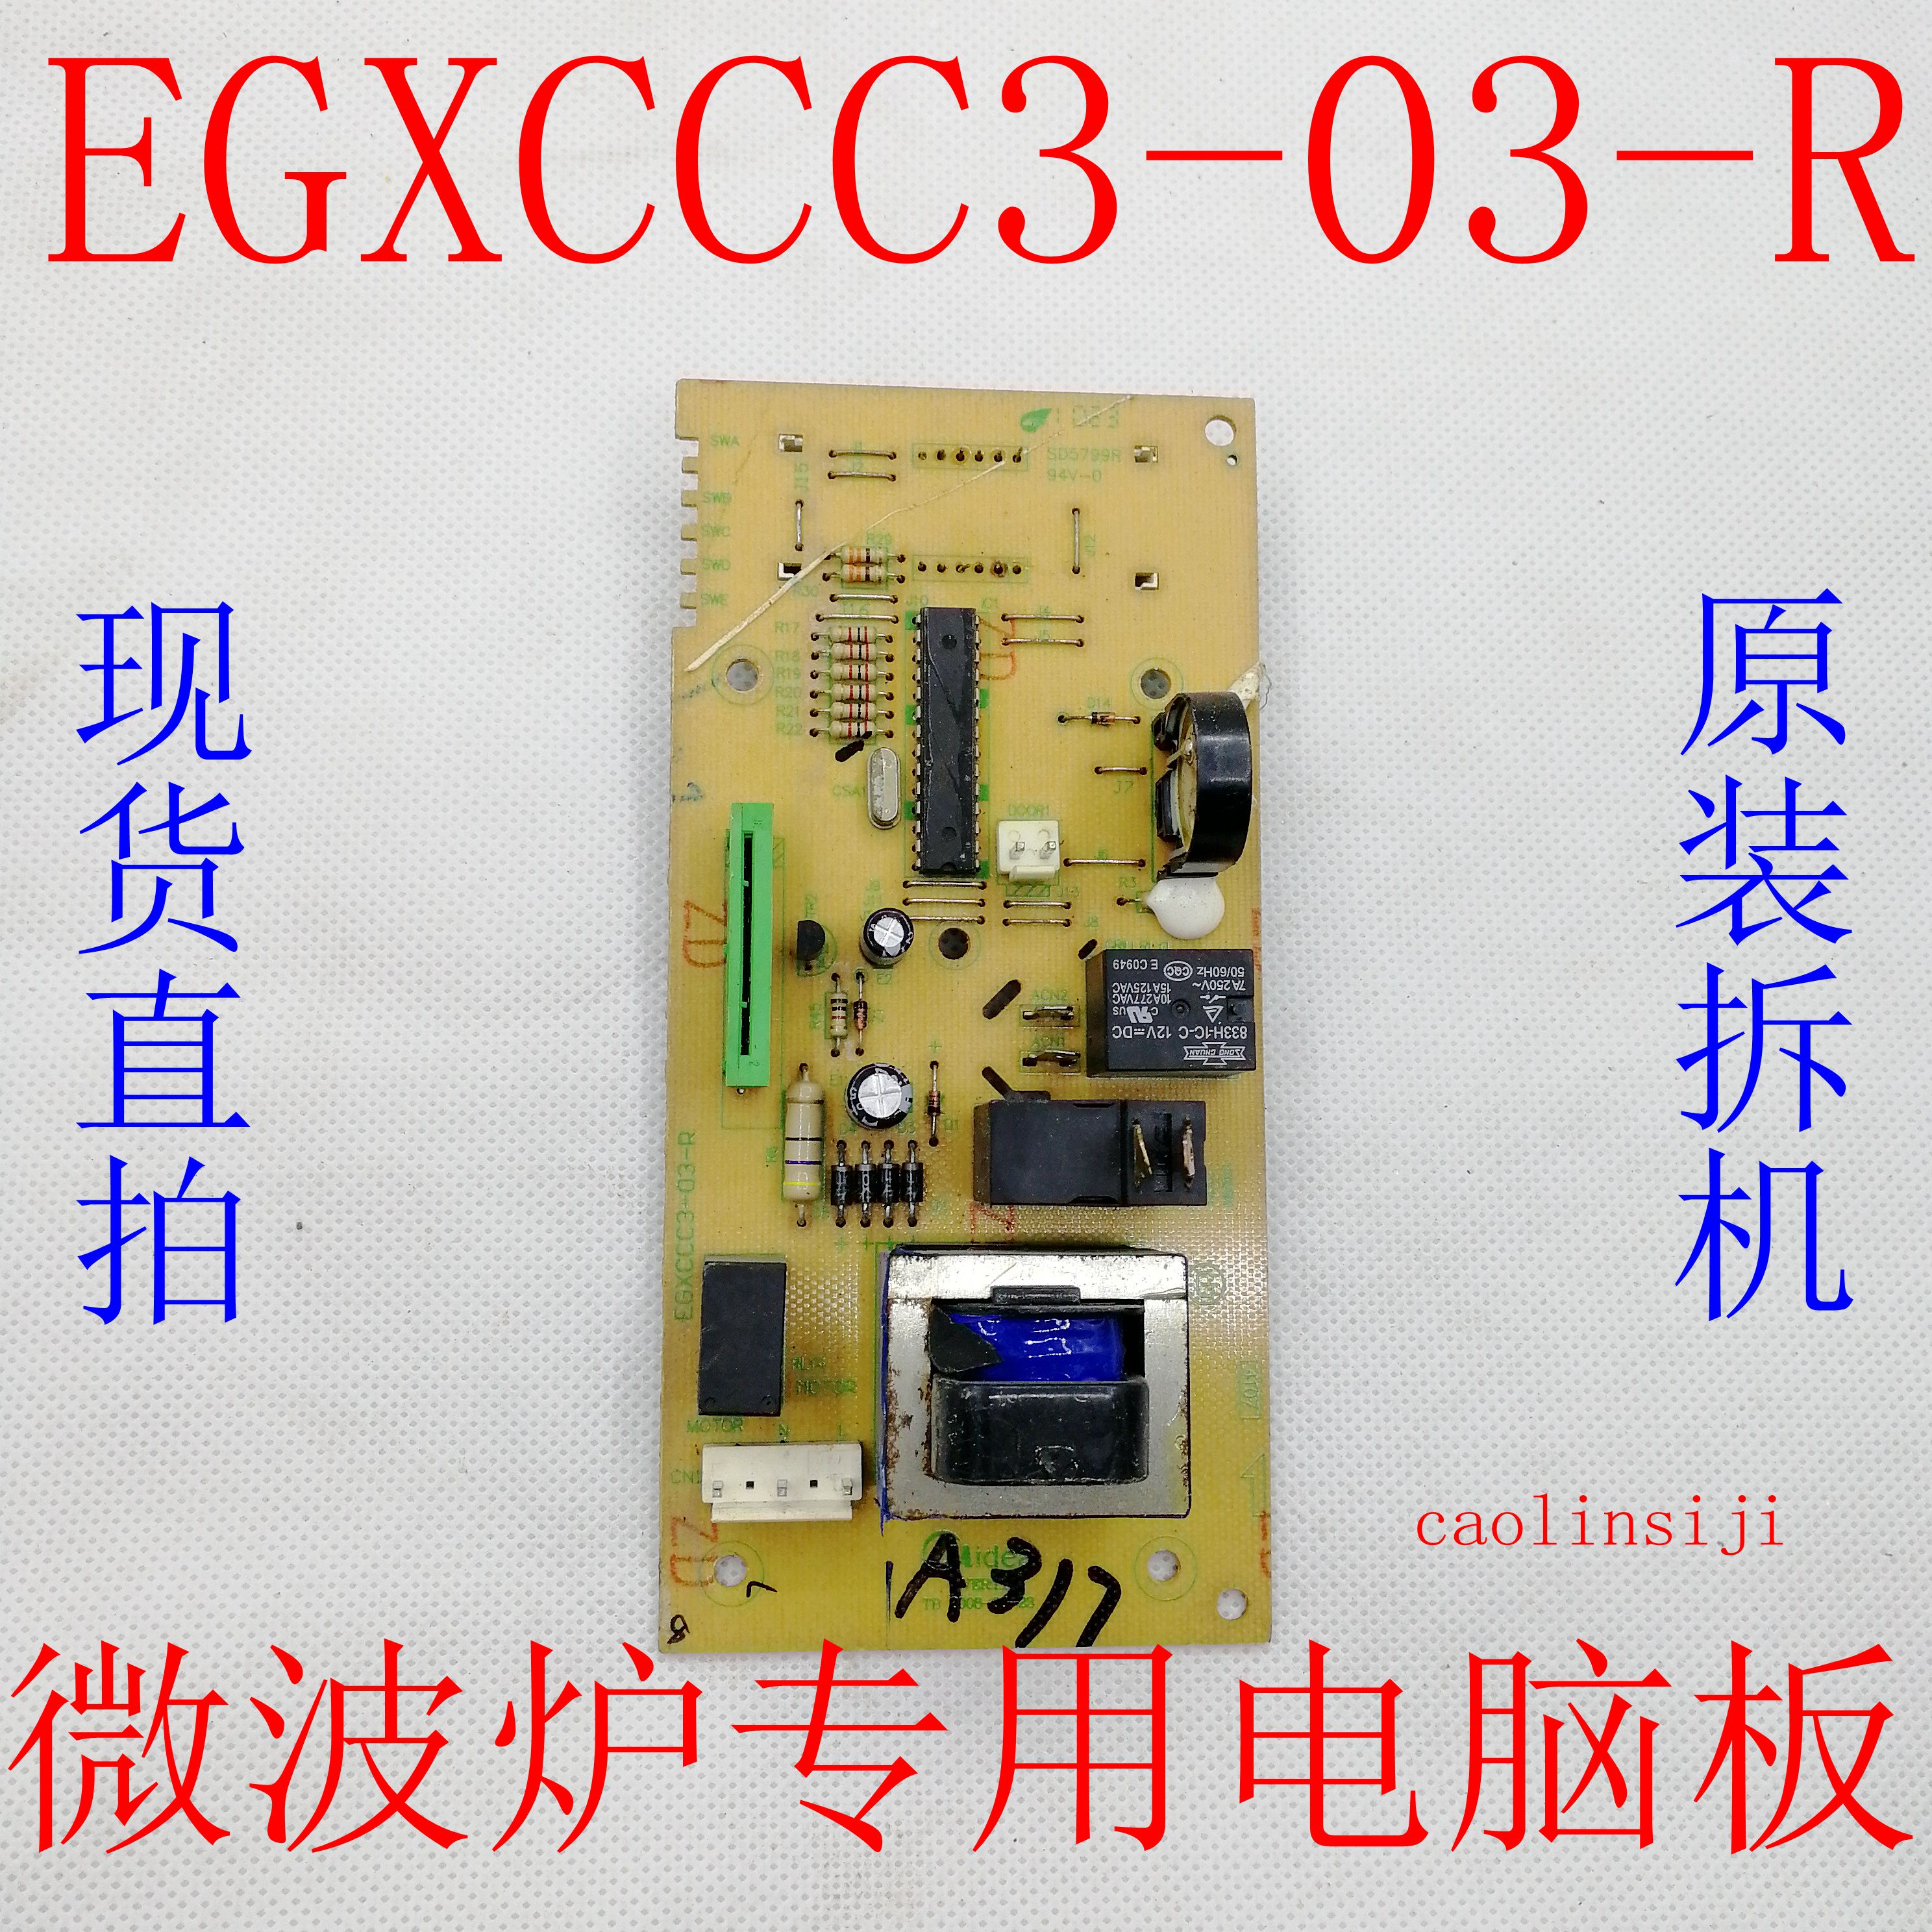  ص EGXCCC3-03-R ǻ -